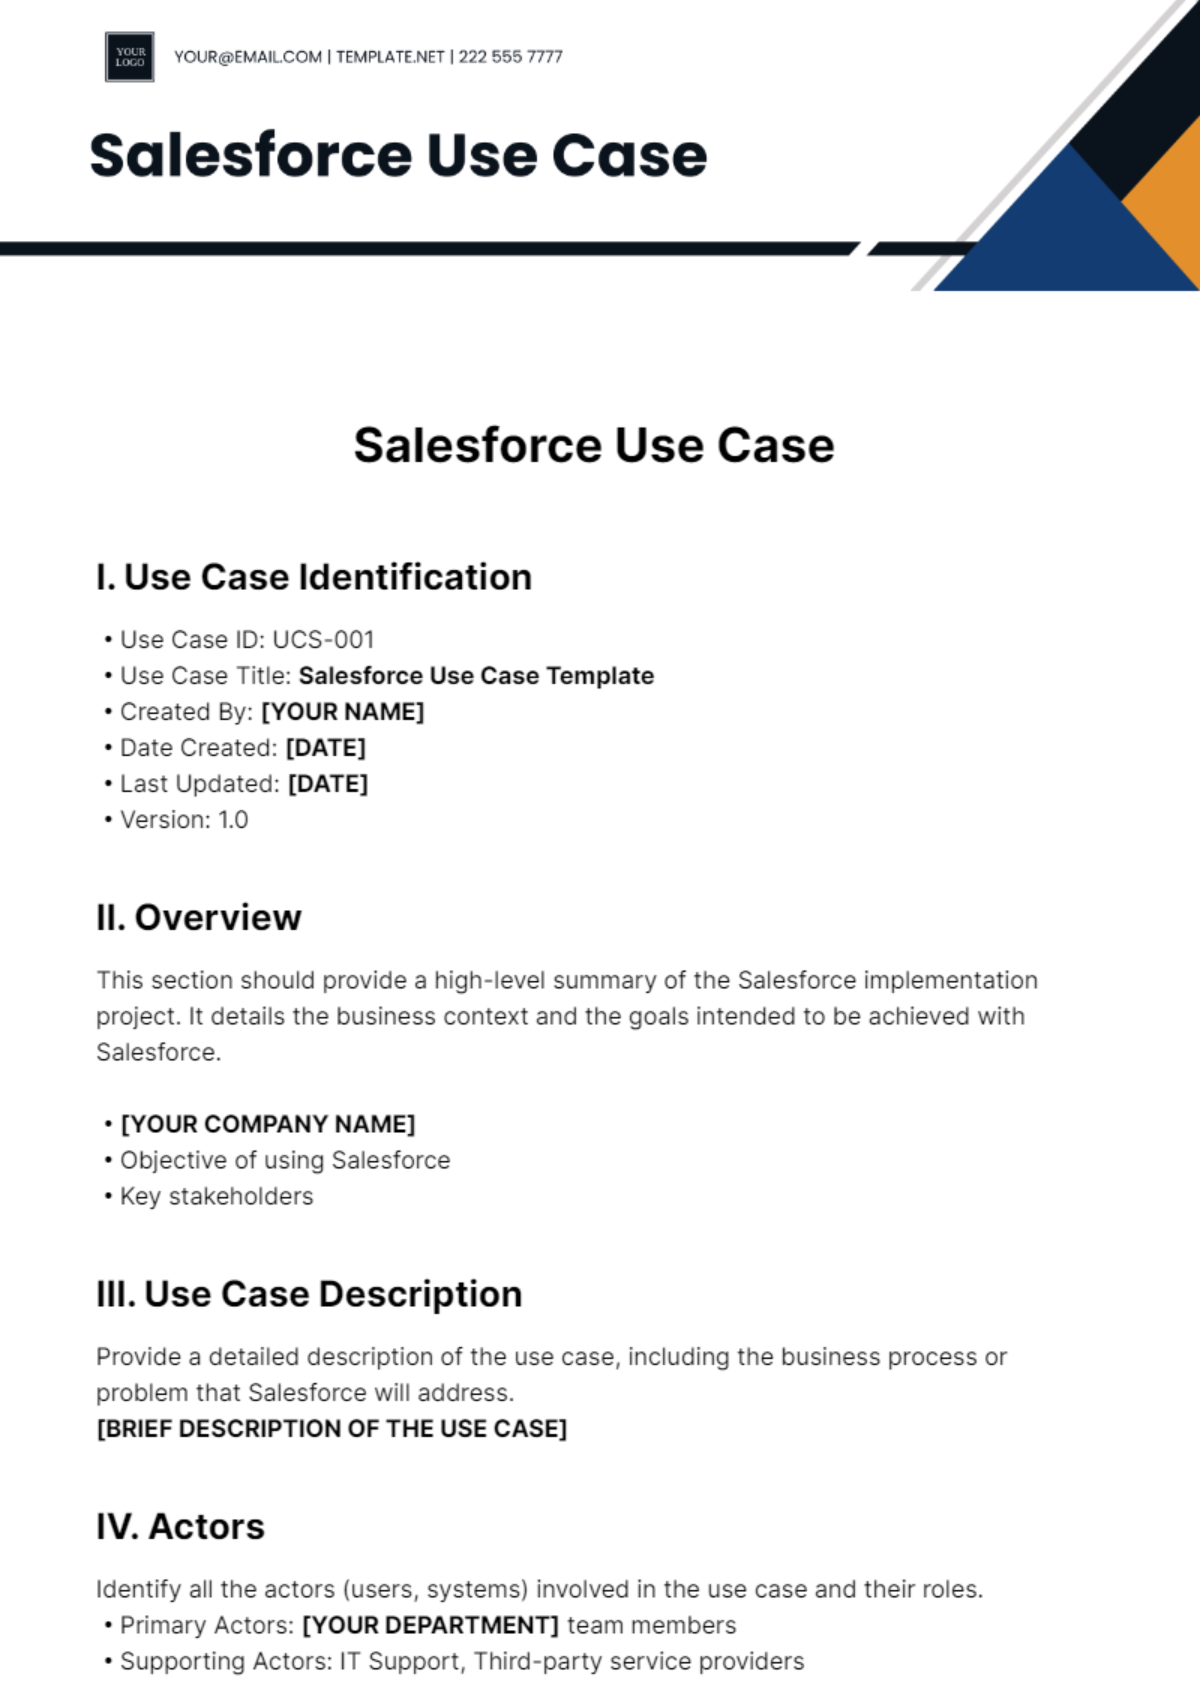 Salesforce Use Case Template